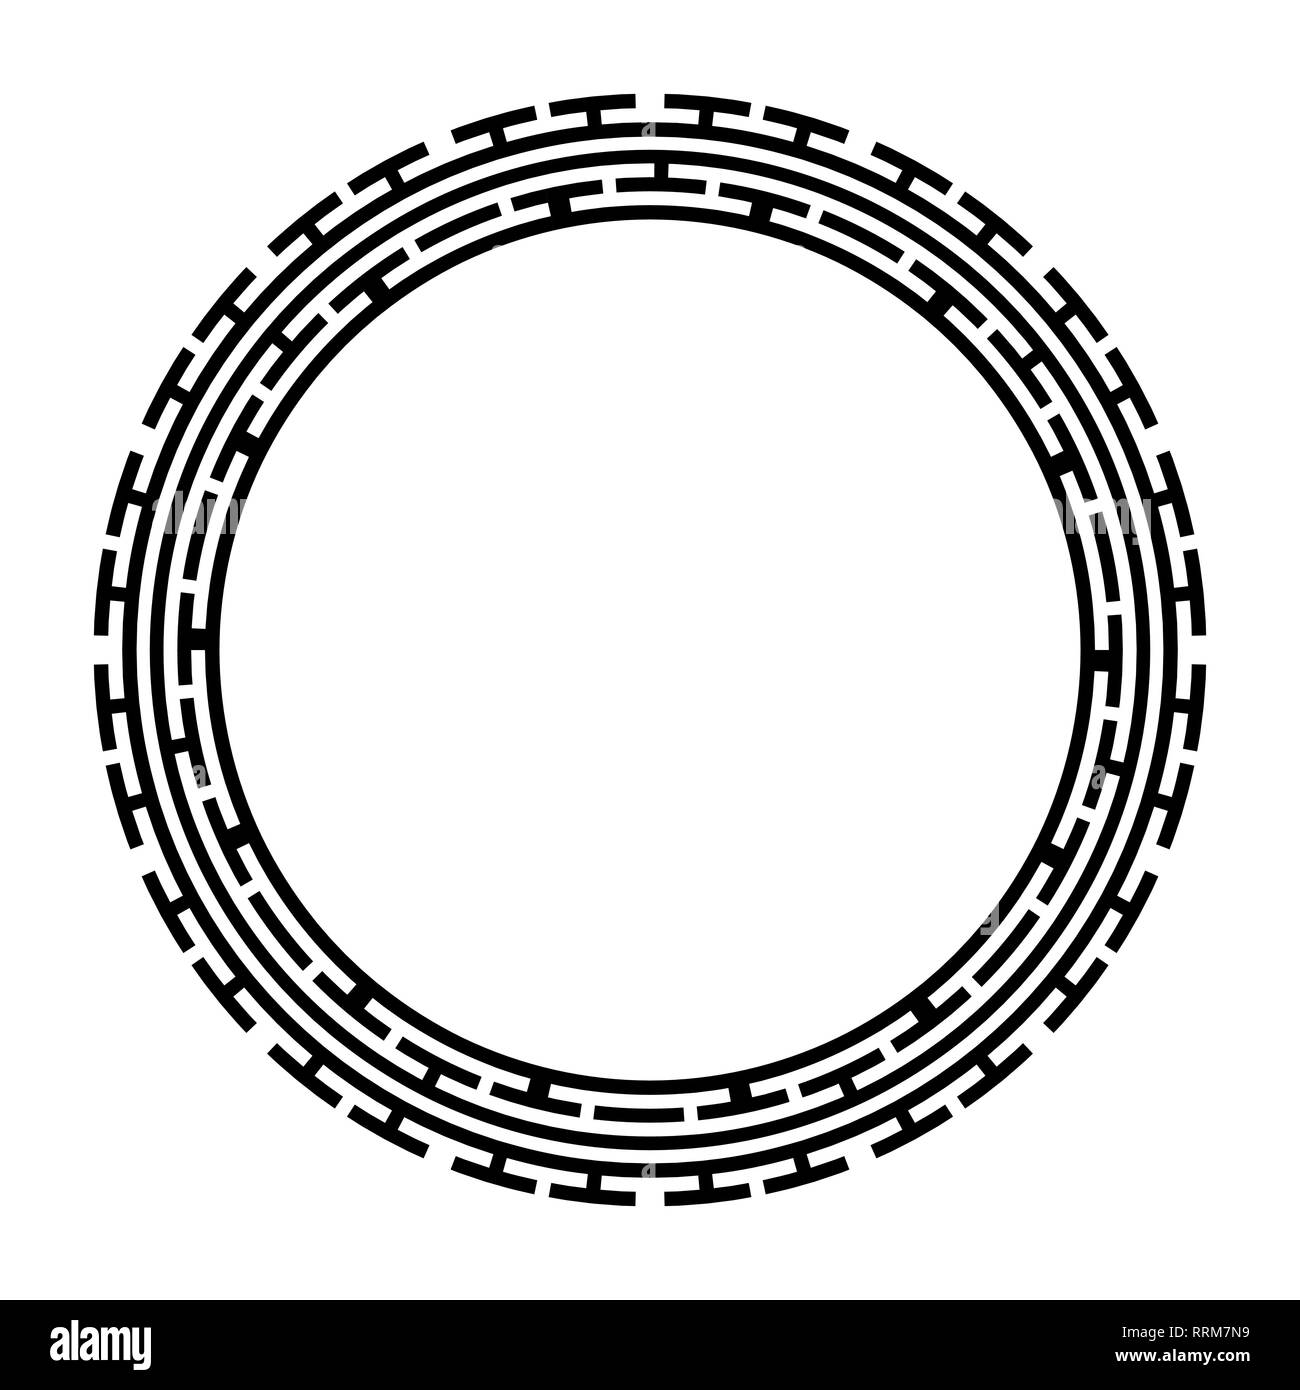 Chiave greca cornice rotonda. Tipica egiziano, Assiri e motivi greco bordo del cerchio. Illustrazione Vettoriale